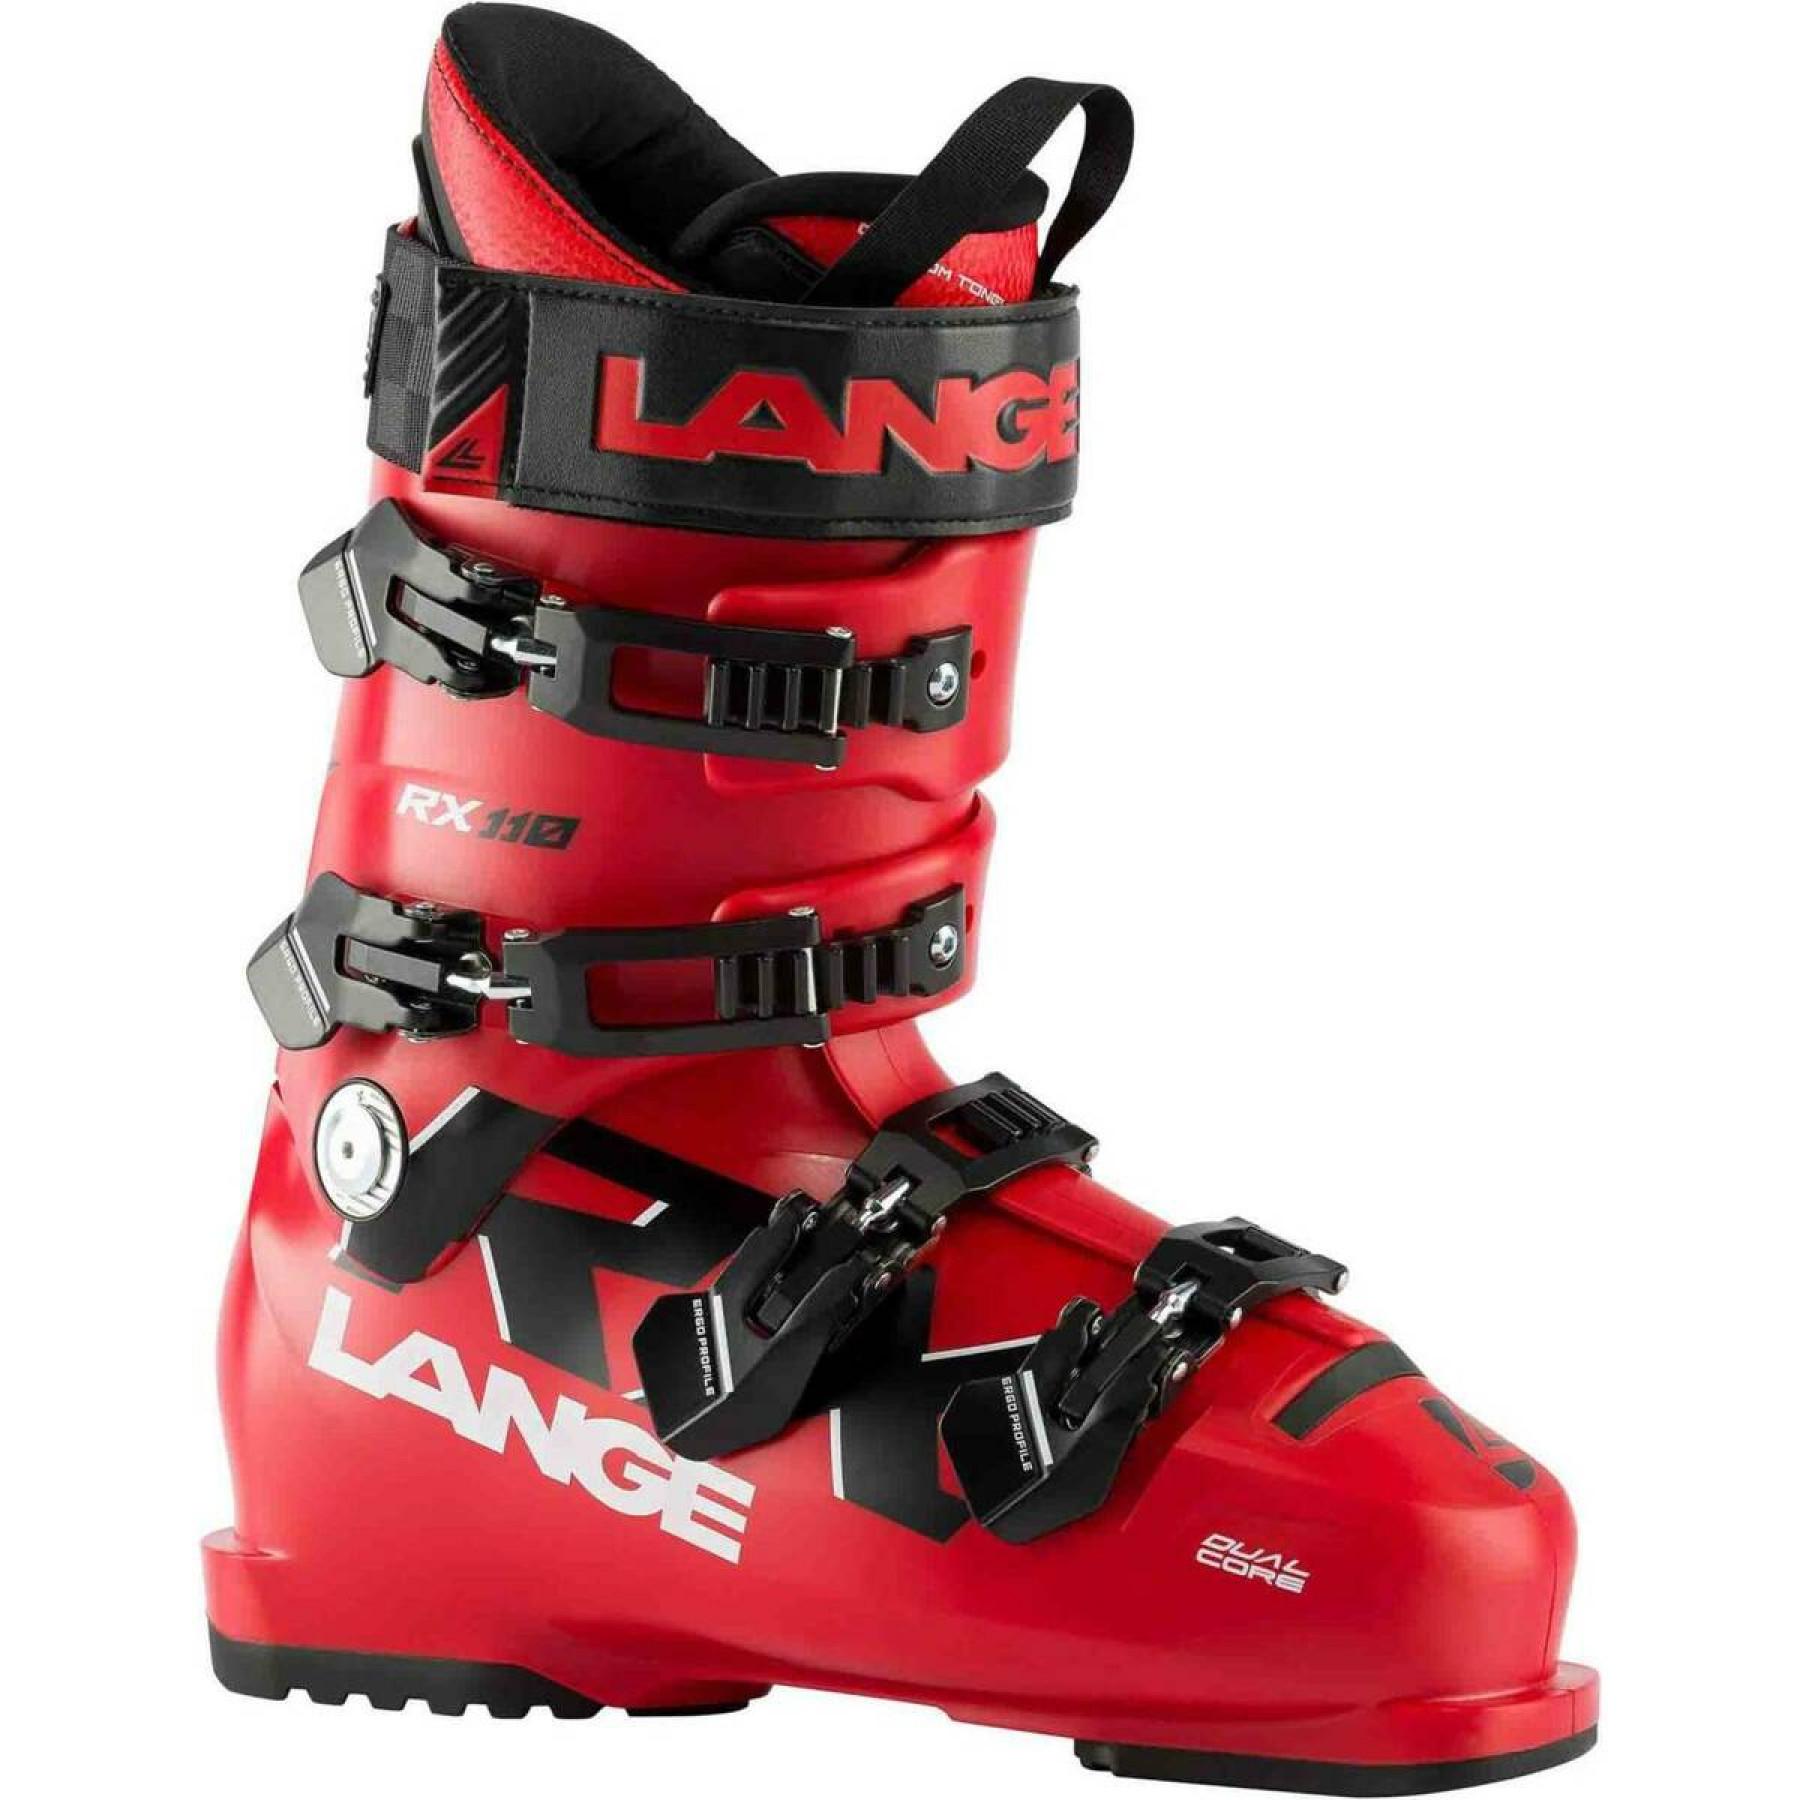 Ski boots Lange rx 110